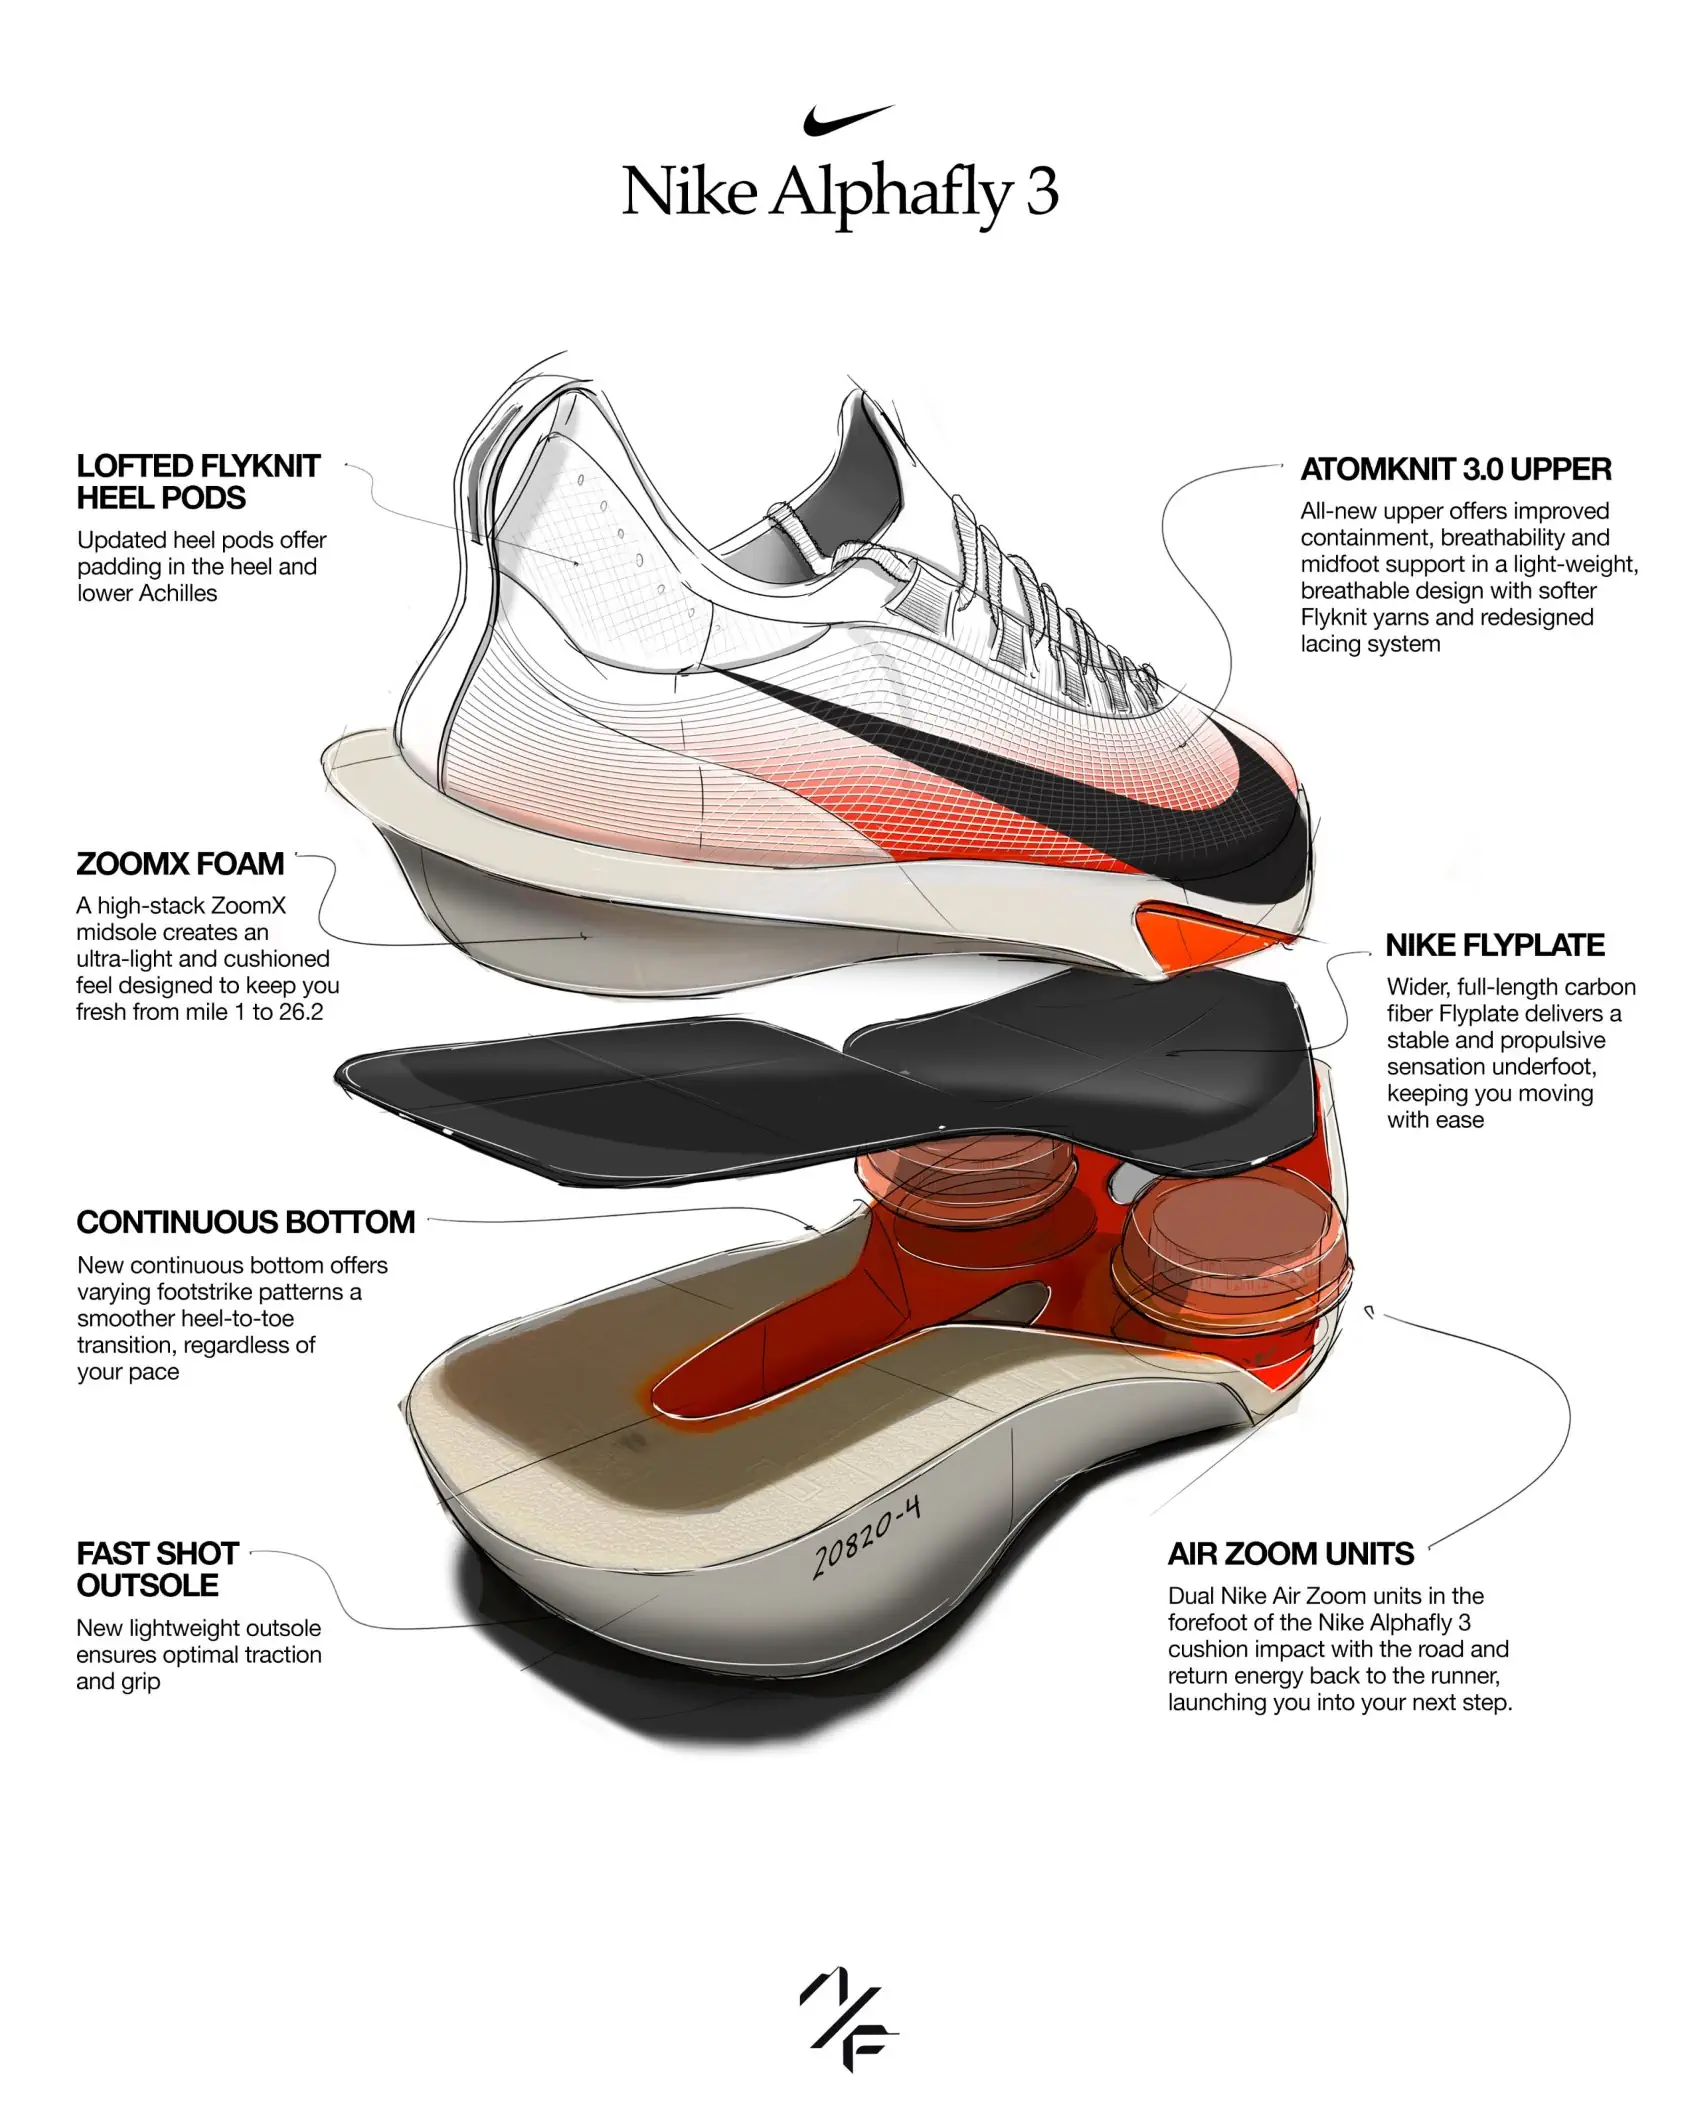 La Nike Alphafly 3 redéfinit l'excellence des chaussures de marathon